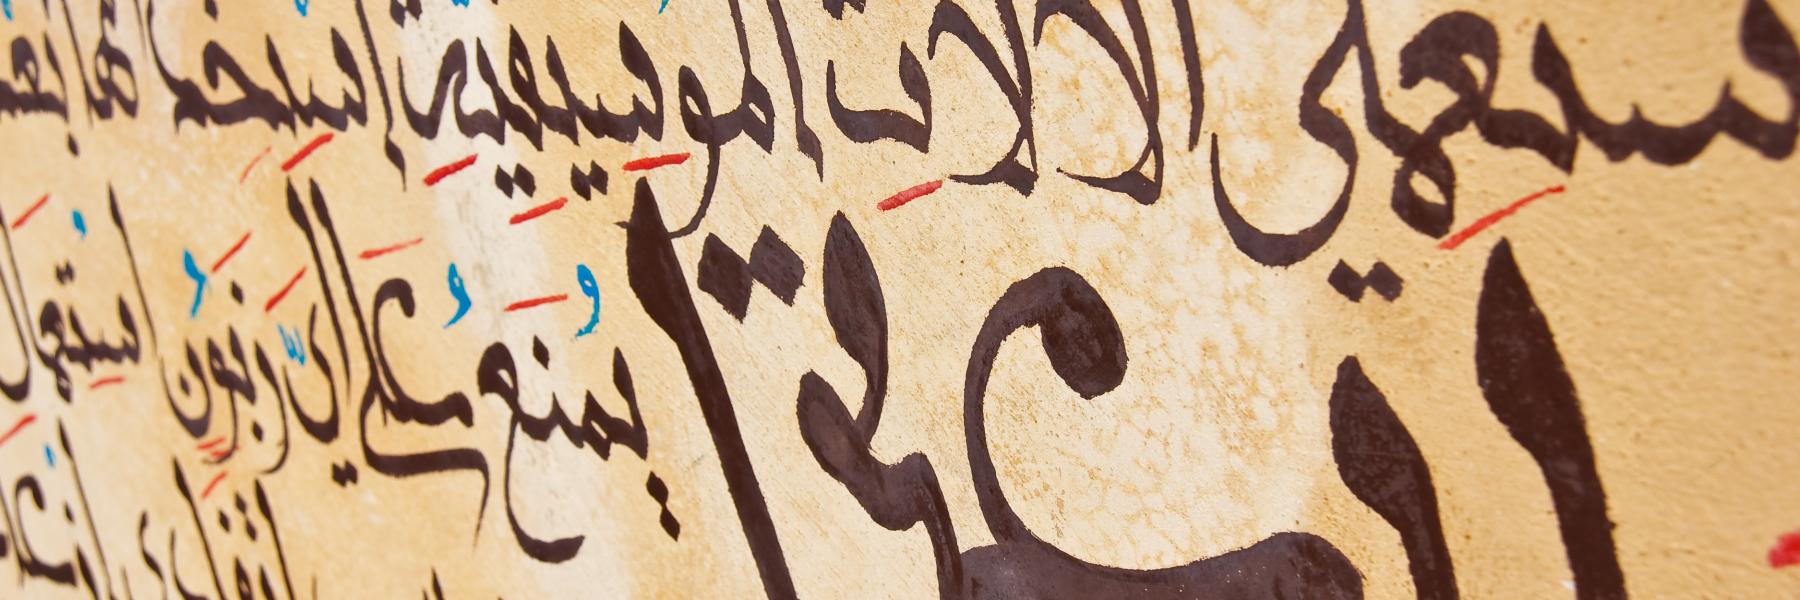 10 كلمات إنجليزية لن تصدقي أنها من أصل عربي